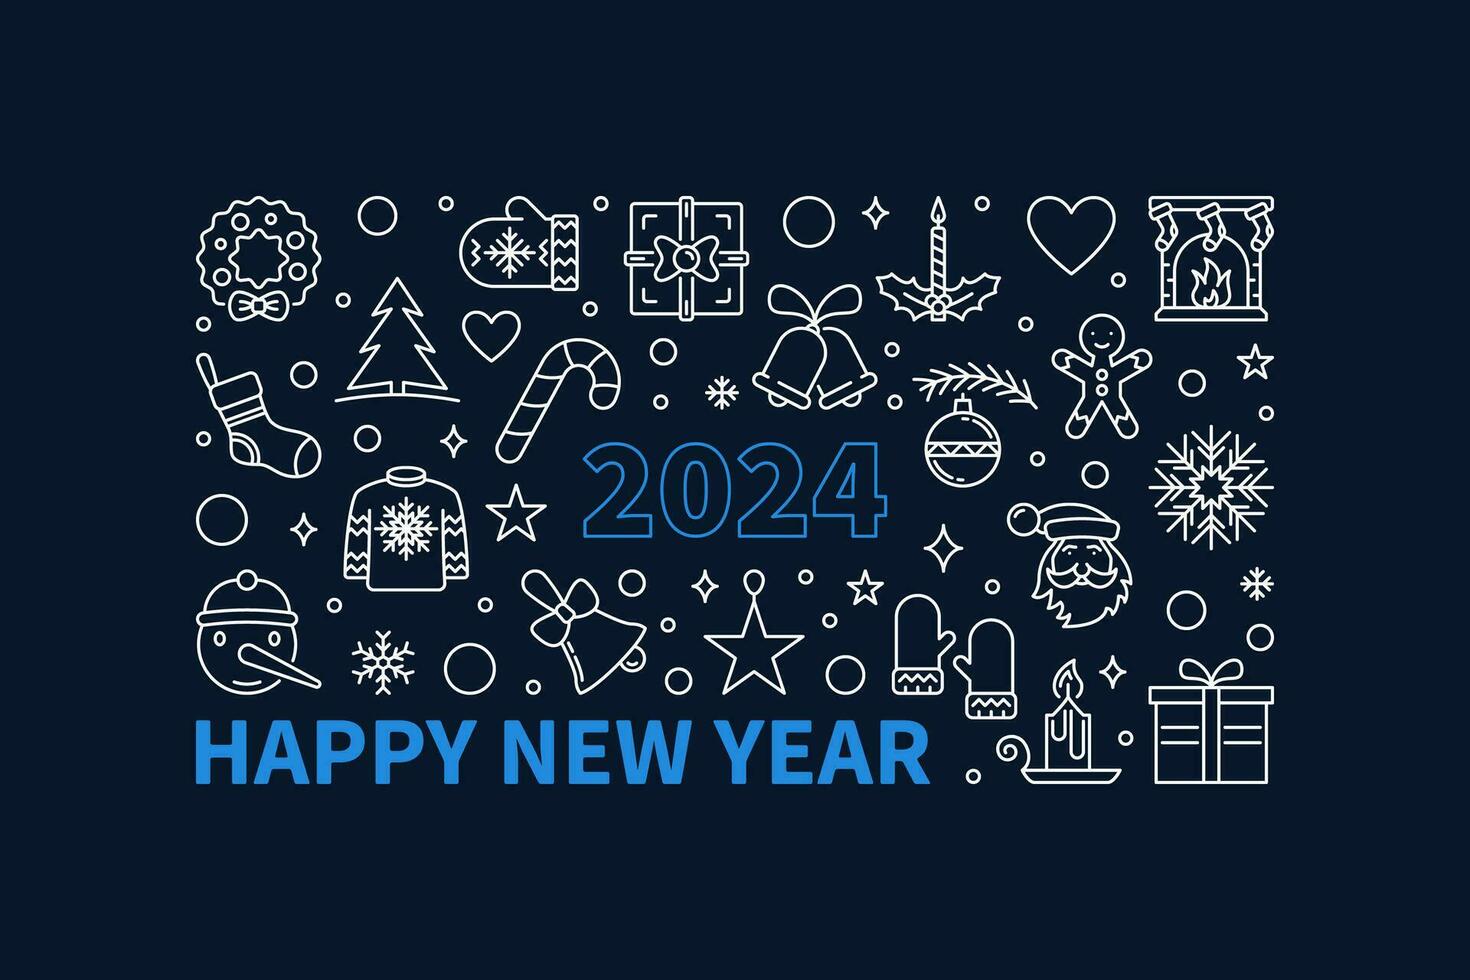 contento nuovo anno 2024 saluto carta o bandiera - vettore schema orizzontale illustrazione